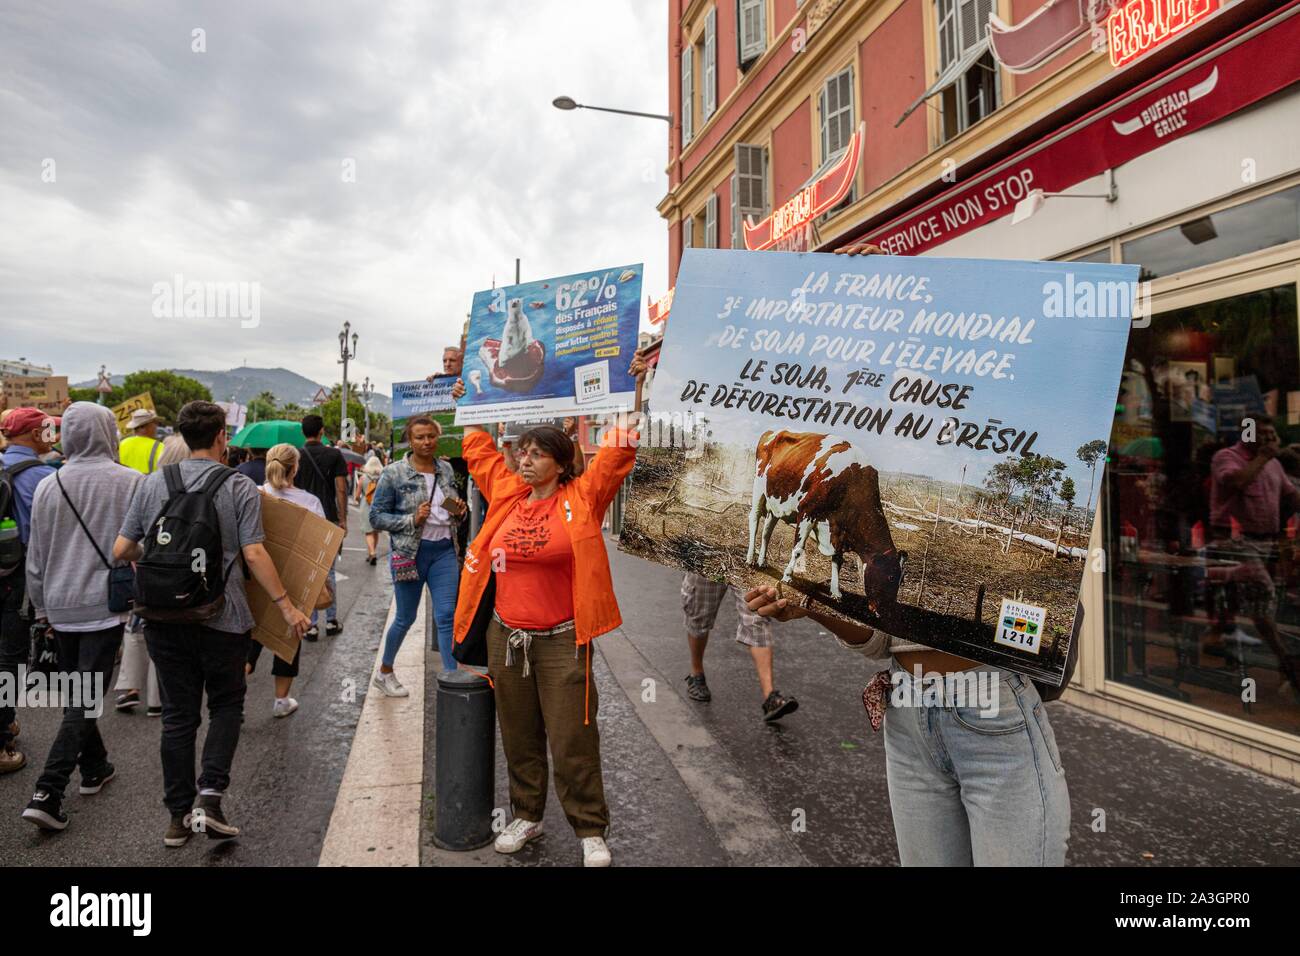 La France, Var, Nice, les manifestants de l'Association de protection animale L214 forme signe avec des slogans contre la sur-consommation de viande et la déforestation en face de l'Enseigne Buffalo Grill restaurant sign pendant la marche pour le climat de samedi, 21 Septembre, 2019 Banque D'Images